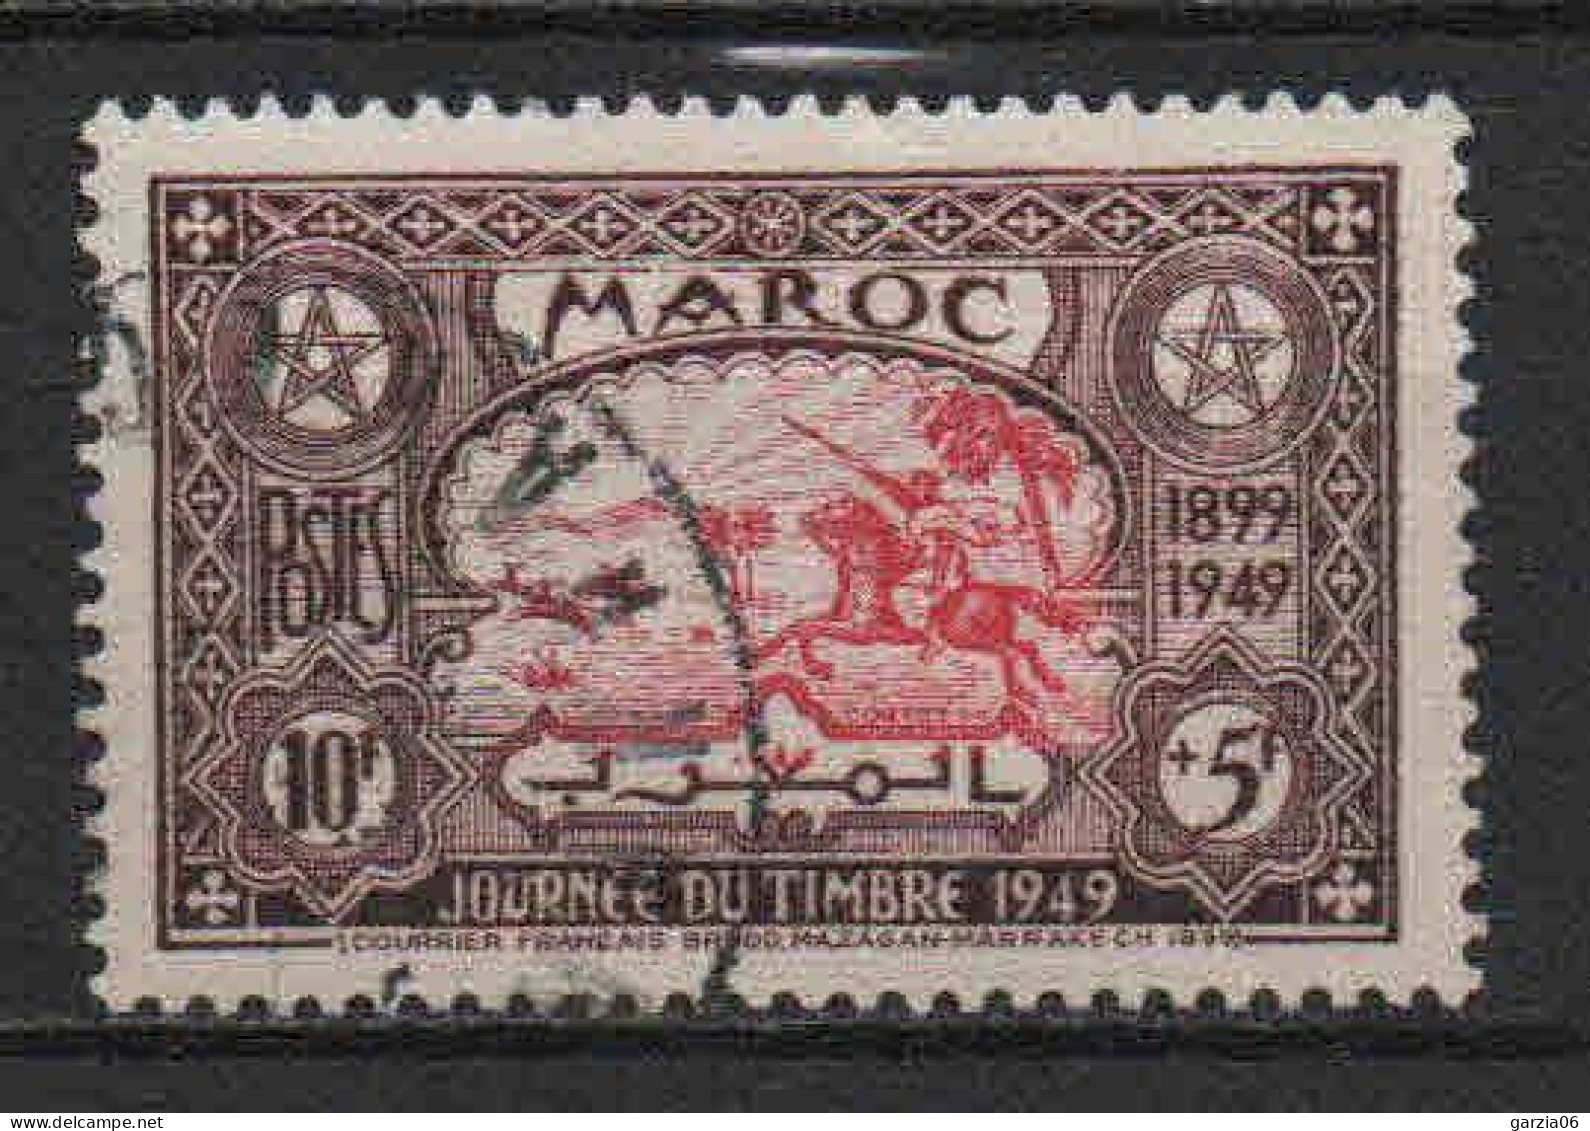 Maroc - 1949 - Journée Du Timbre -  N° 275 - Oblit - Used - Oblitérés